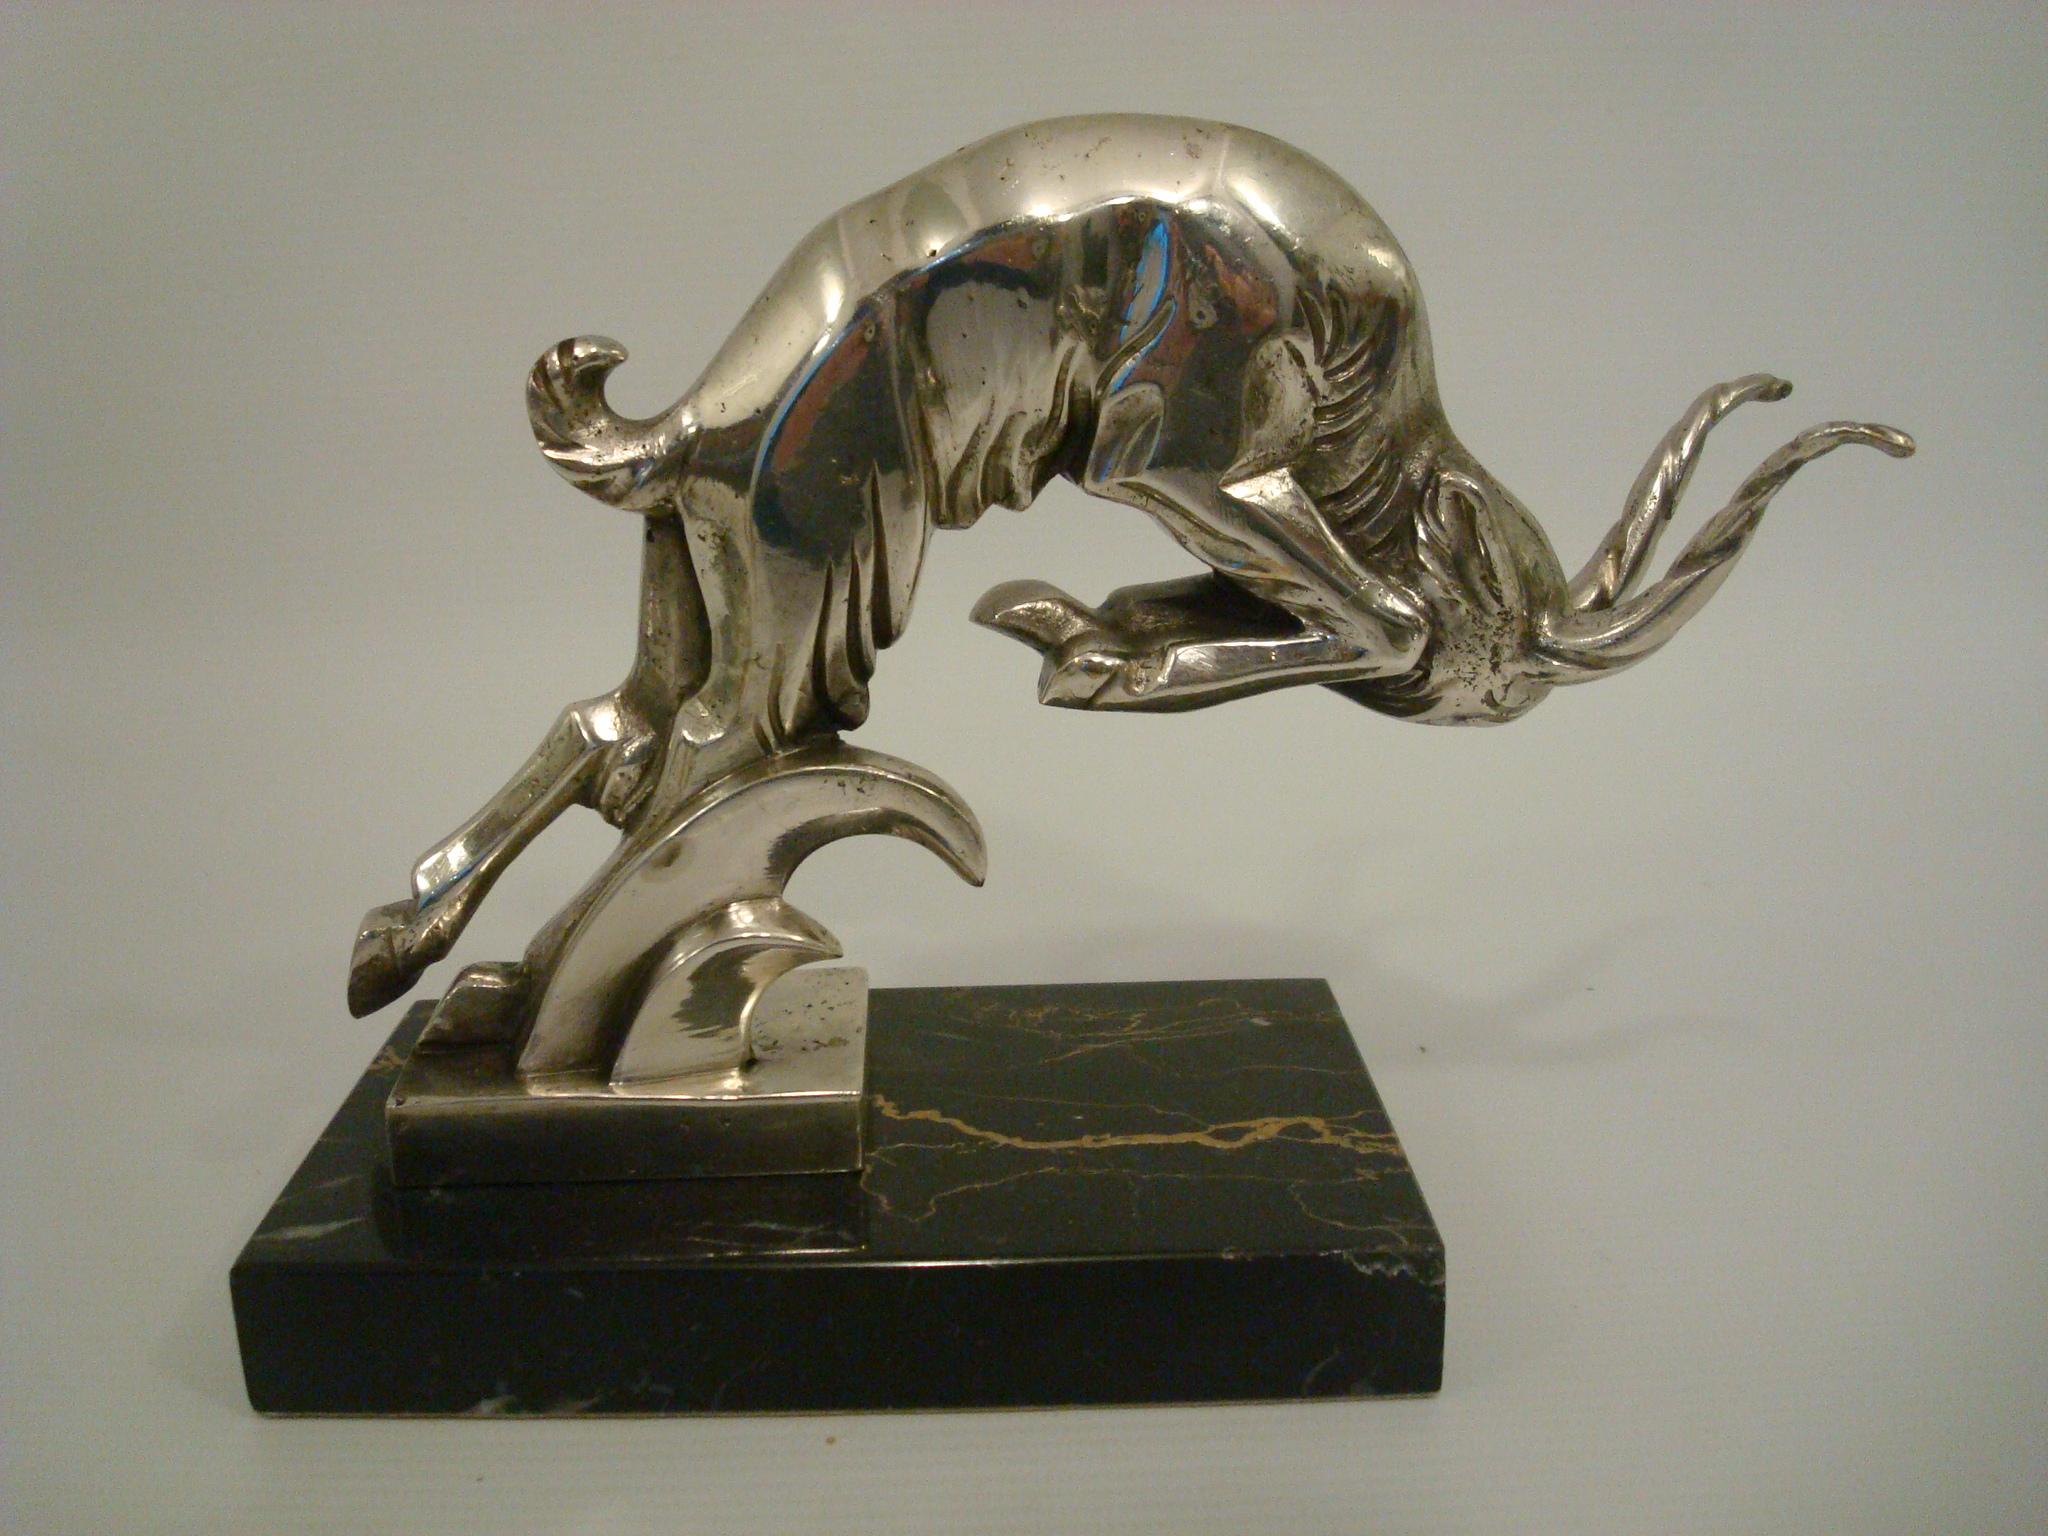 Art Deco-Ladewidder Versilberte Bronze-Skulptur - Italienisch 1930er Jahre.
Figur signiert auf dem Sockel C. Rossi und Grigio.
Perfekter Briefbeschwerer für den Schreibtisch.